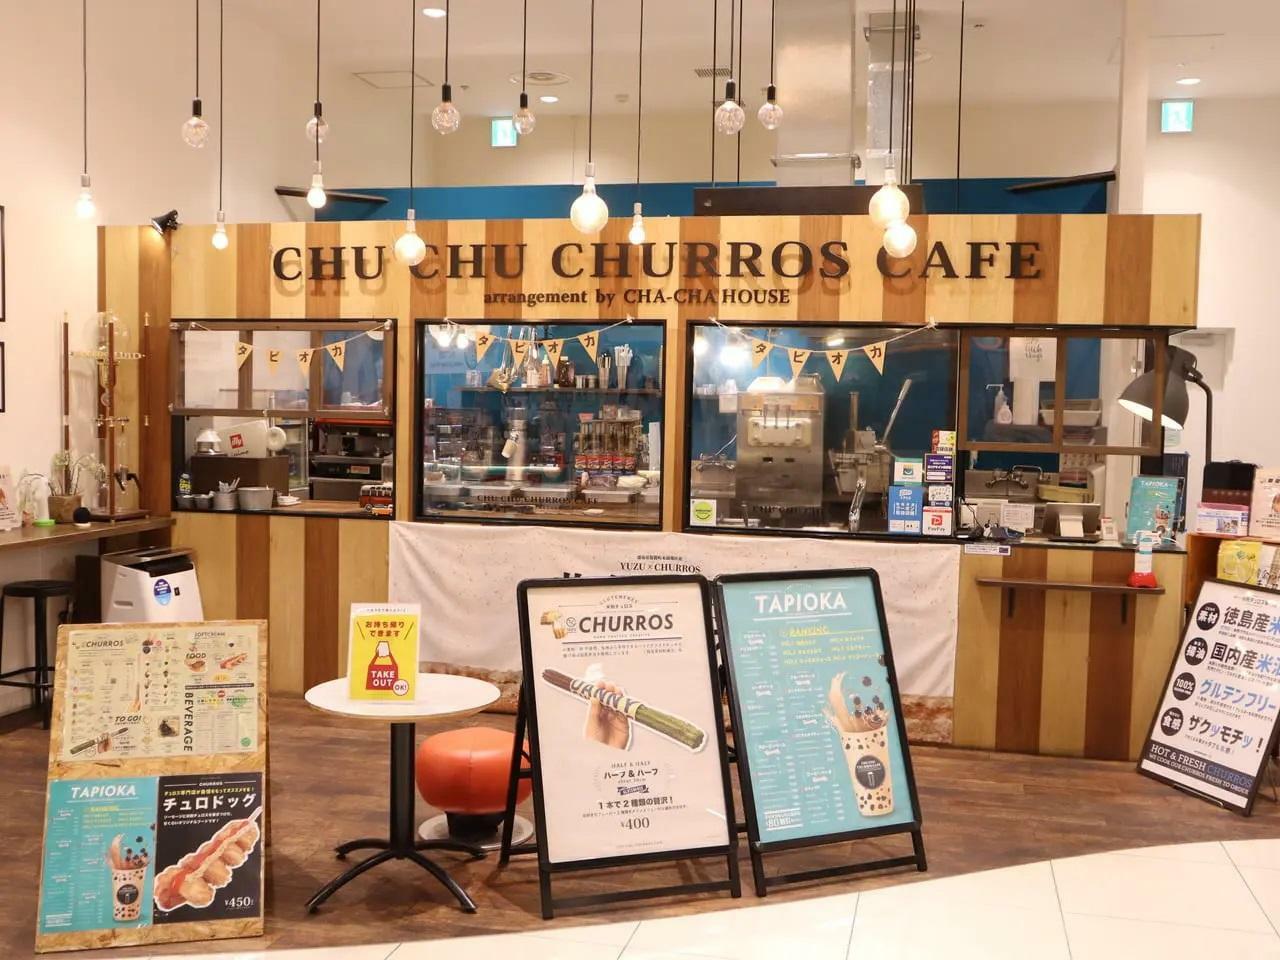 「イオンモール徳島」の「CHU CHU CHURROS CAFE」店舗外観。